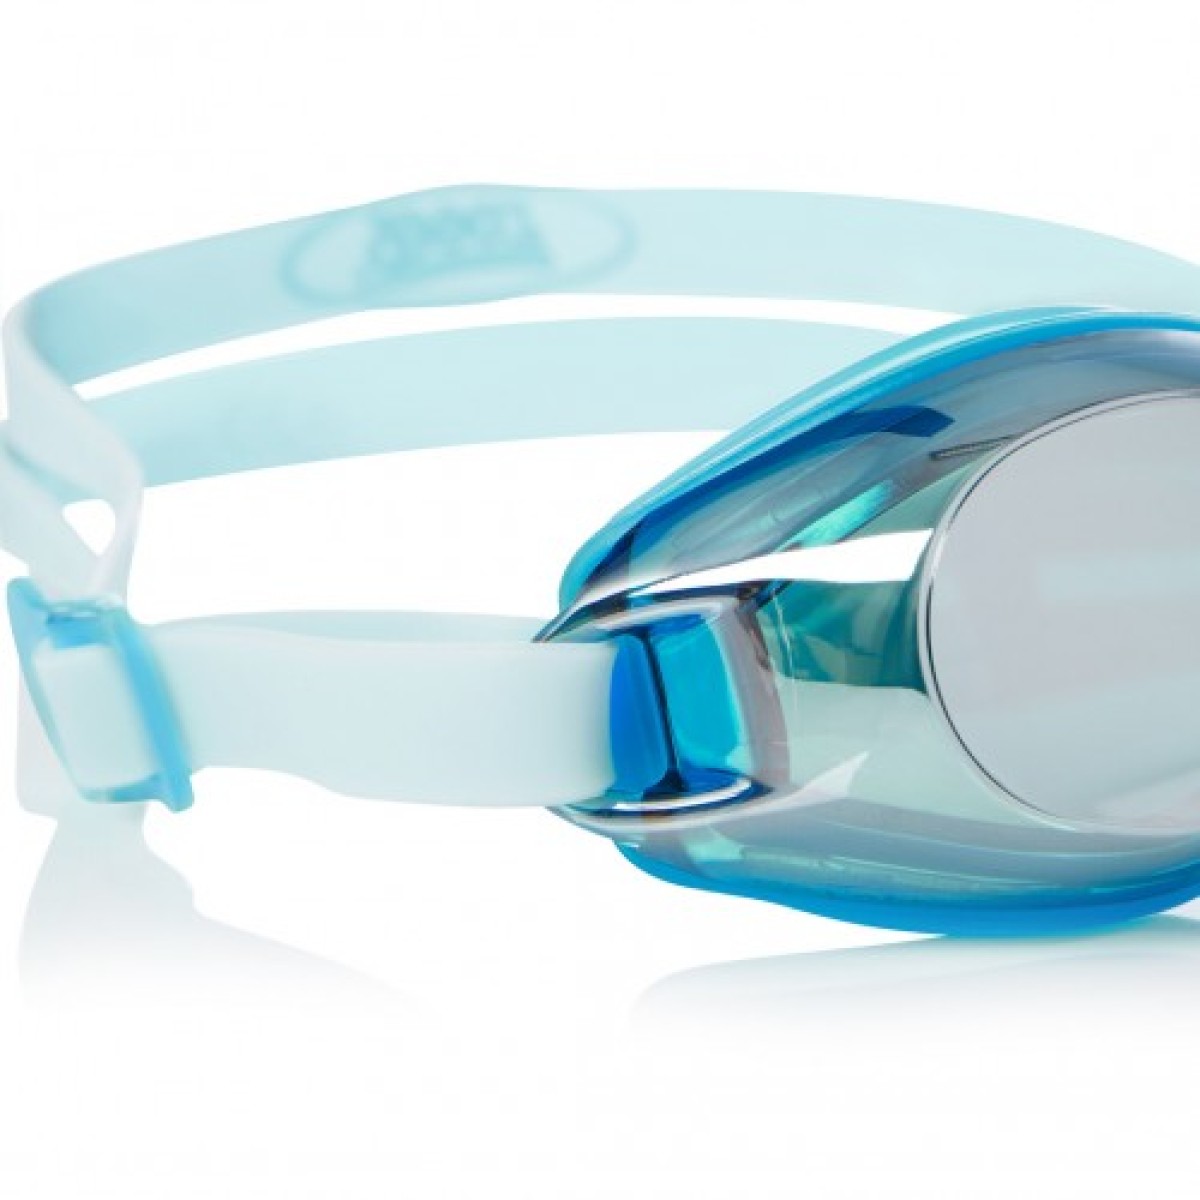 Swimming goggles Endura Mirror blue/silver ZOGGS - view 2